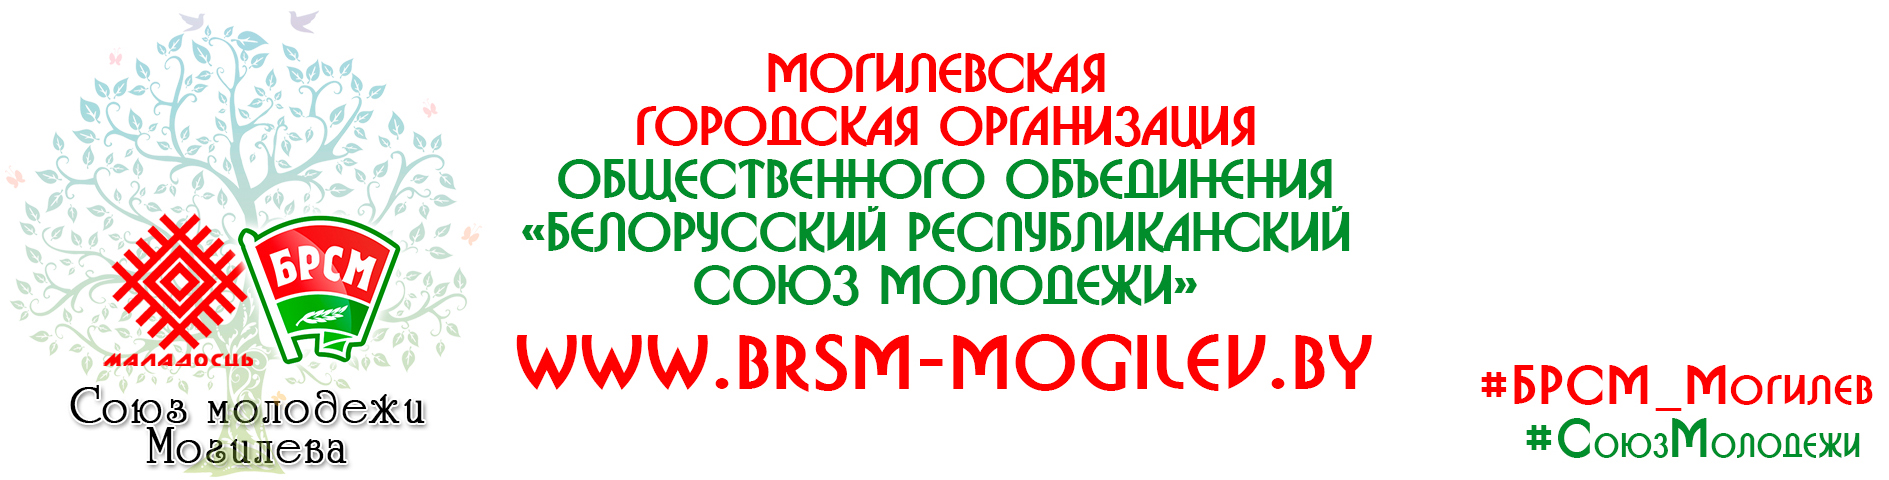 Могилевская городская организация общественного объединения «Белорусский республиканский союз молодежи»